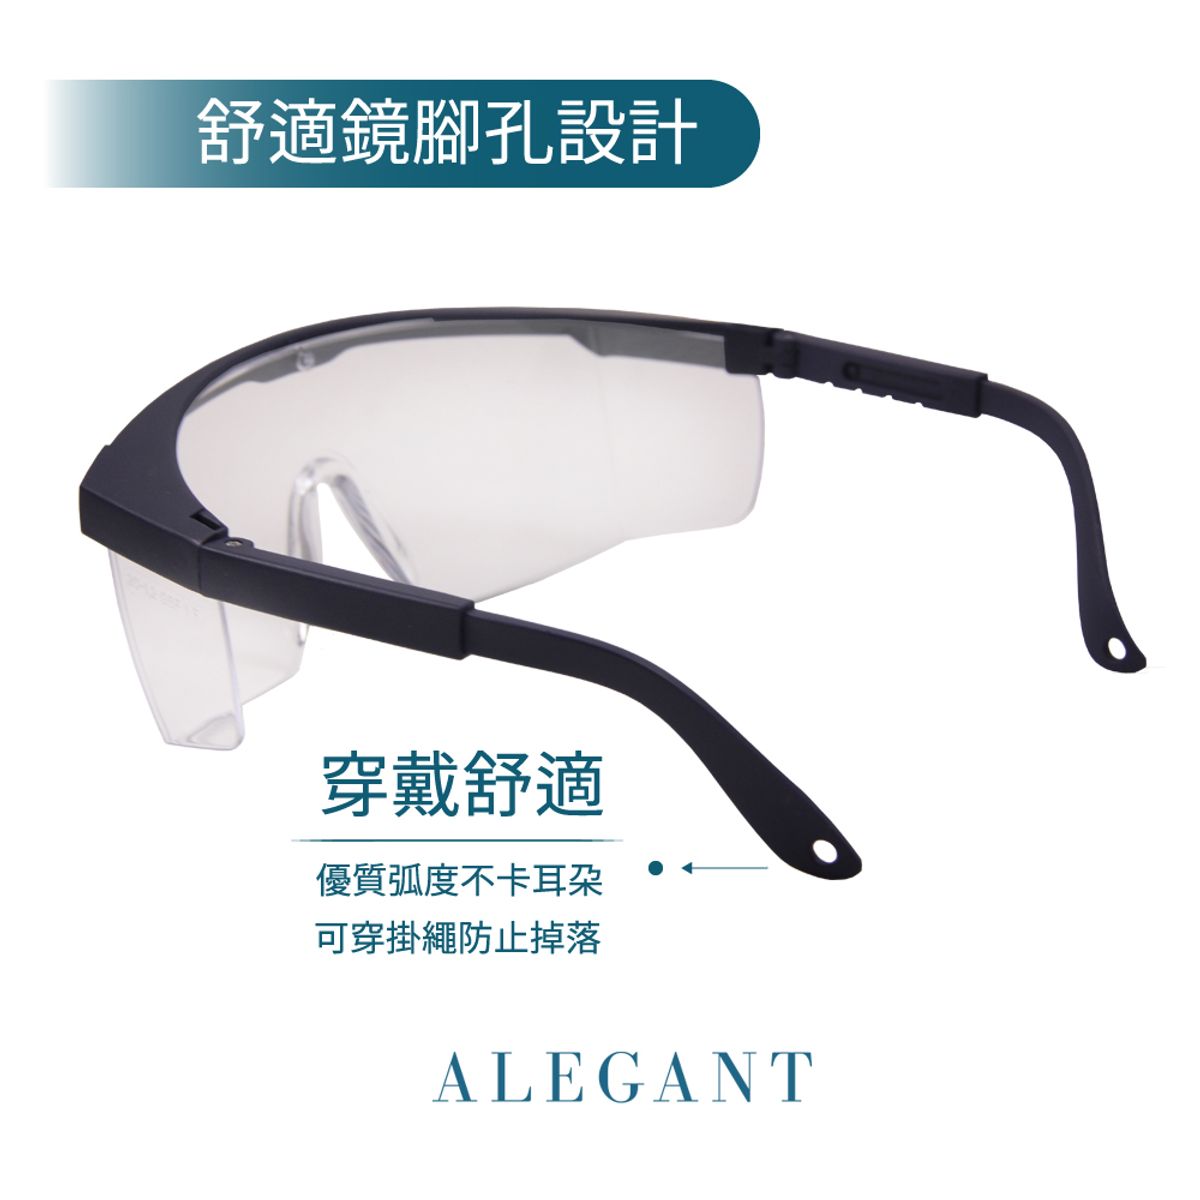 霧藍框架質感設計/加大鏡片伸縮鏡腳安全護目鏡